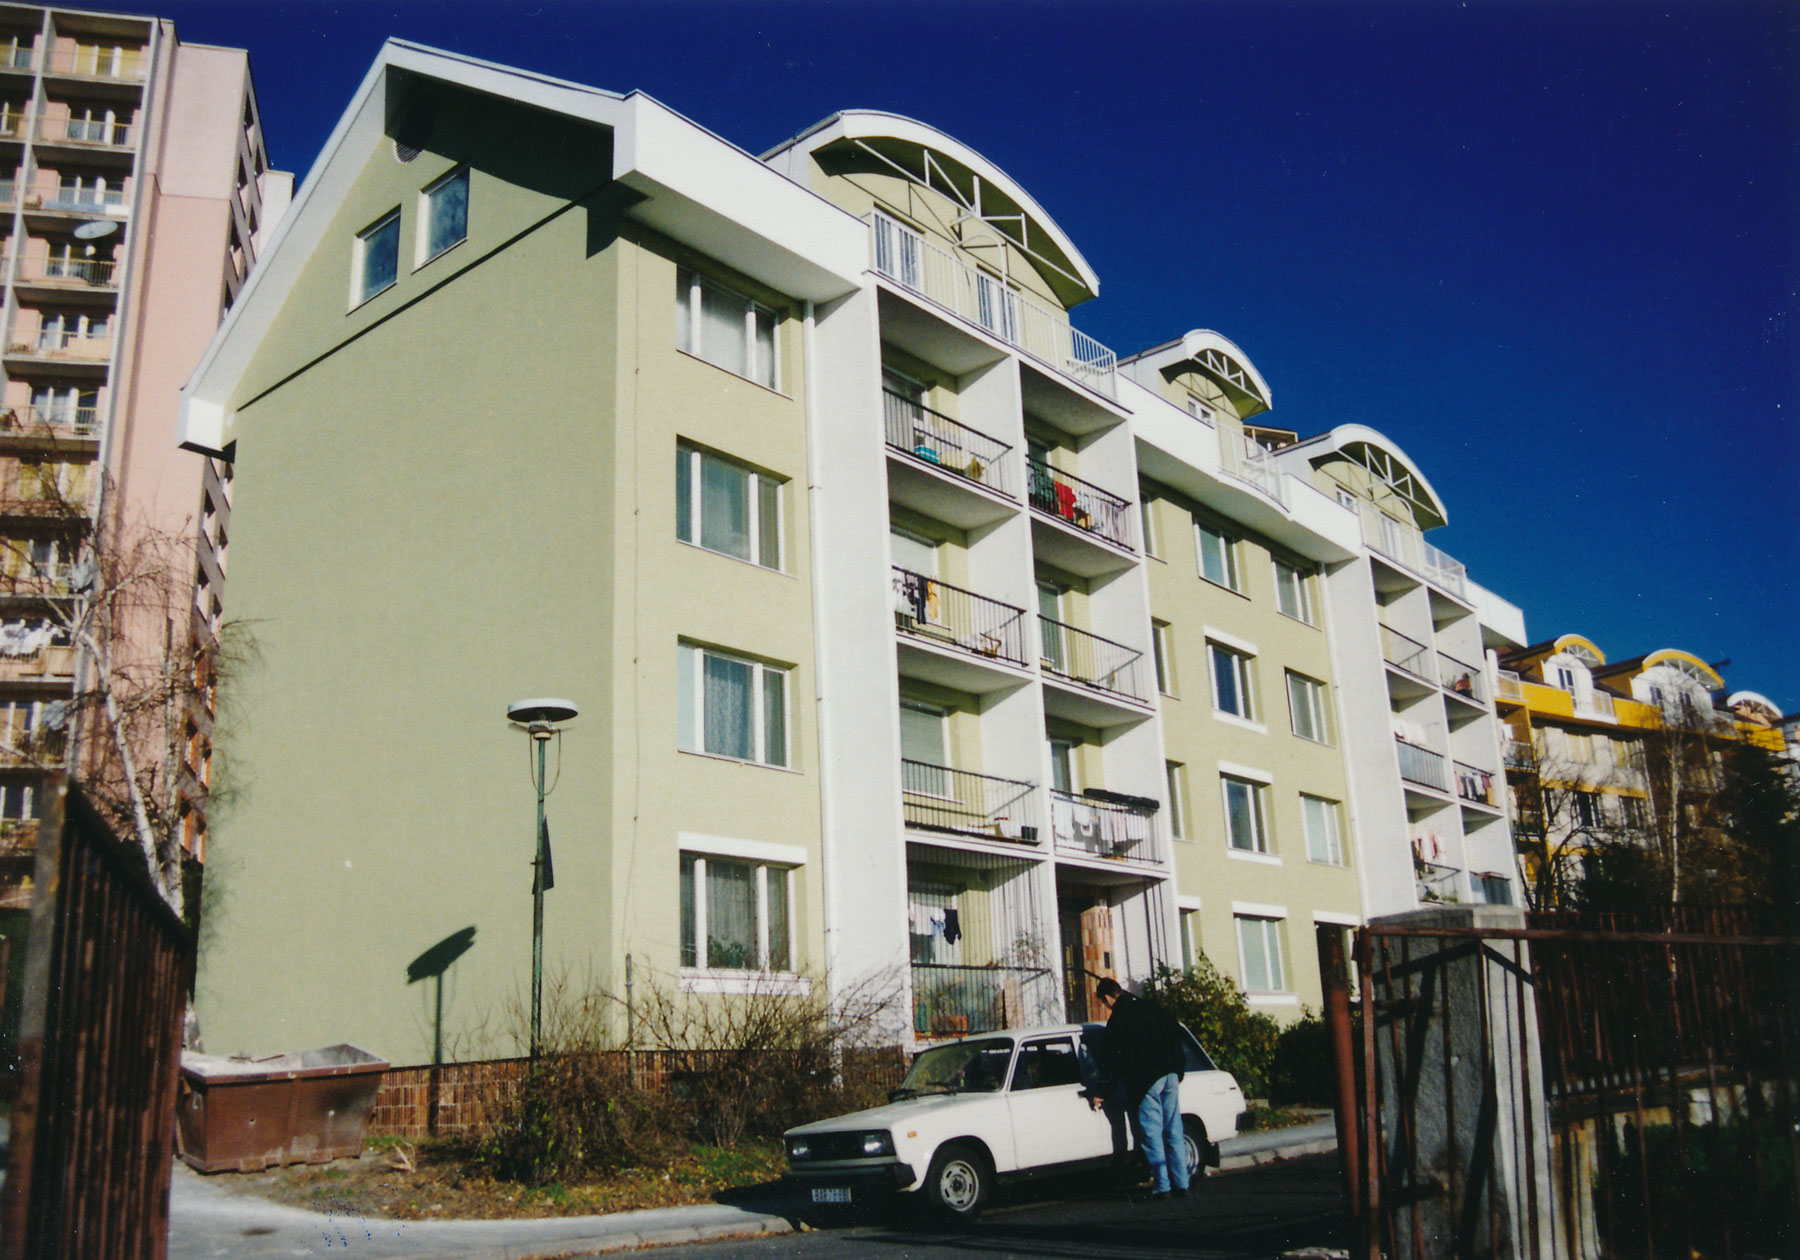 Po prvýkrát sa na území Slovenska použilo zateplenie celoplošne na obvodovom plášti budovy na pilotnom projekte 332 bytových jednotiek Bratislava-Kramáre (1991 – 1994).